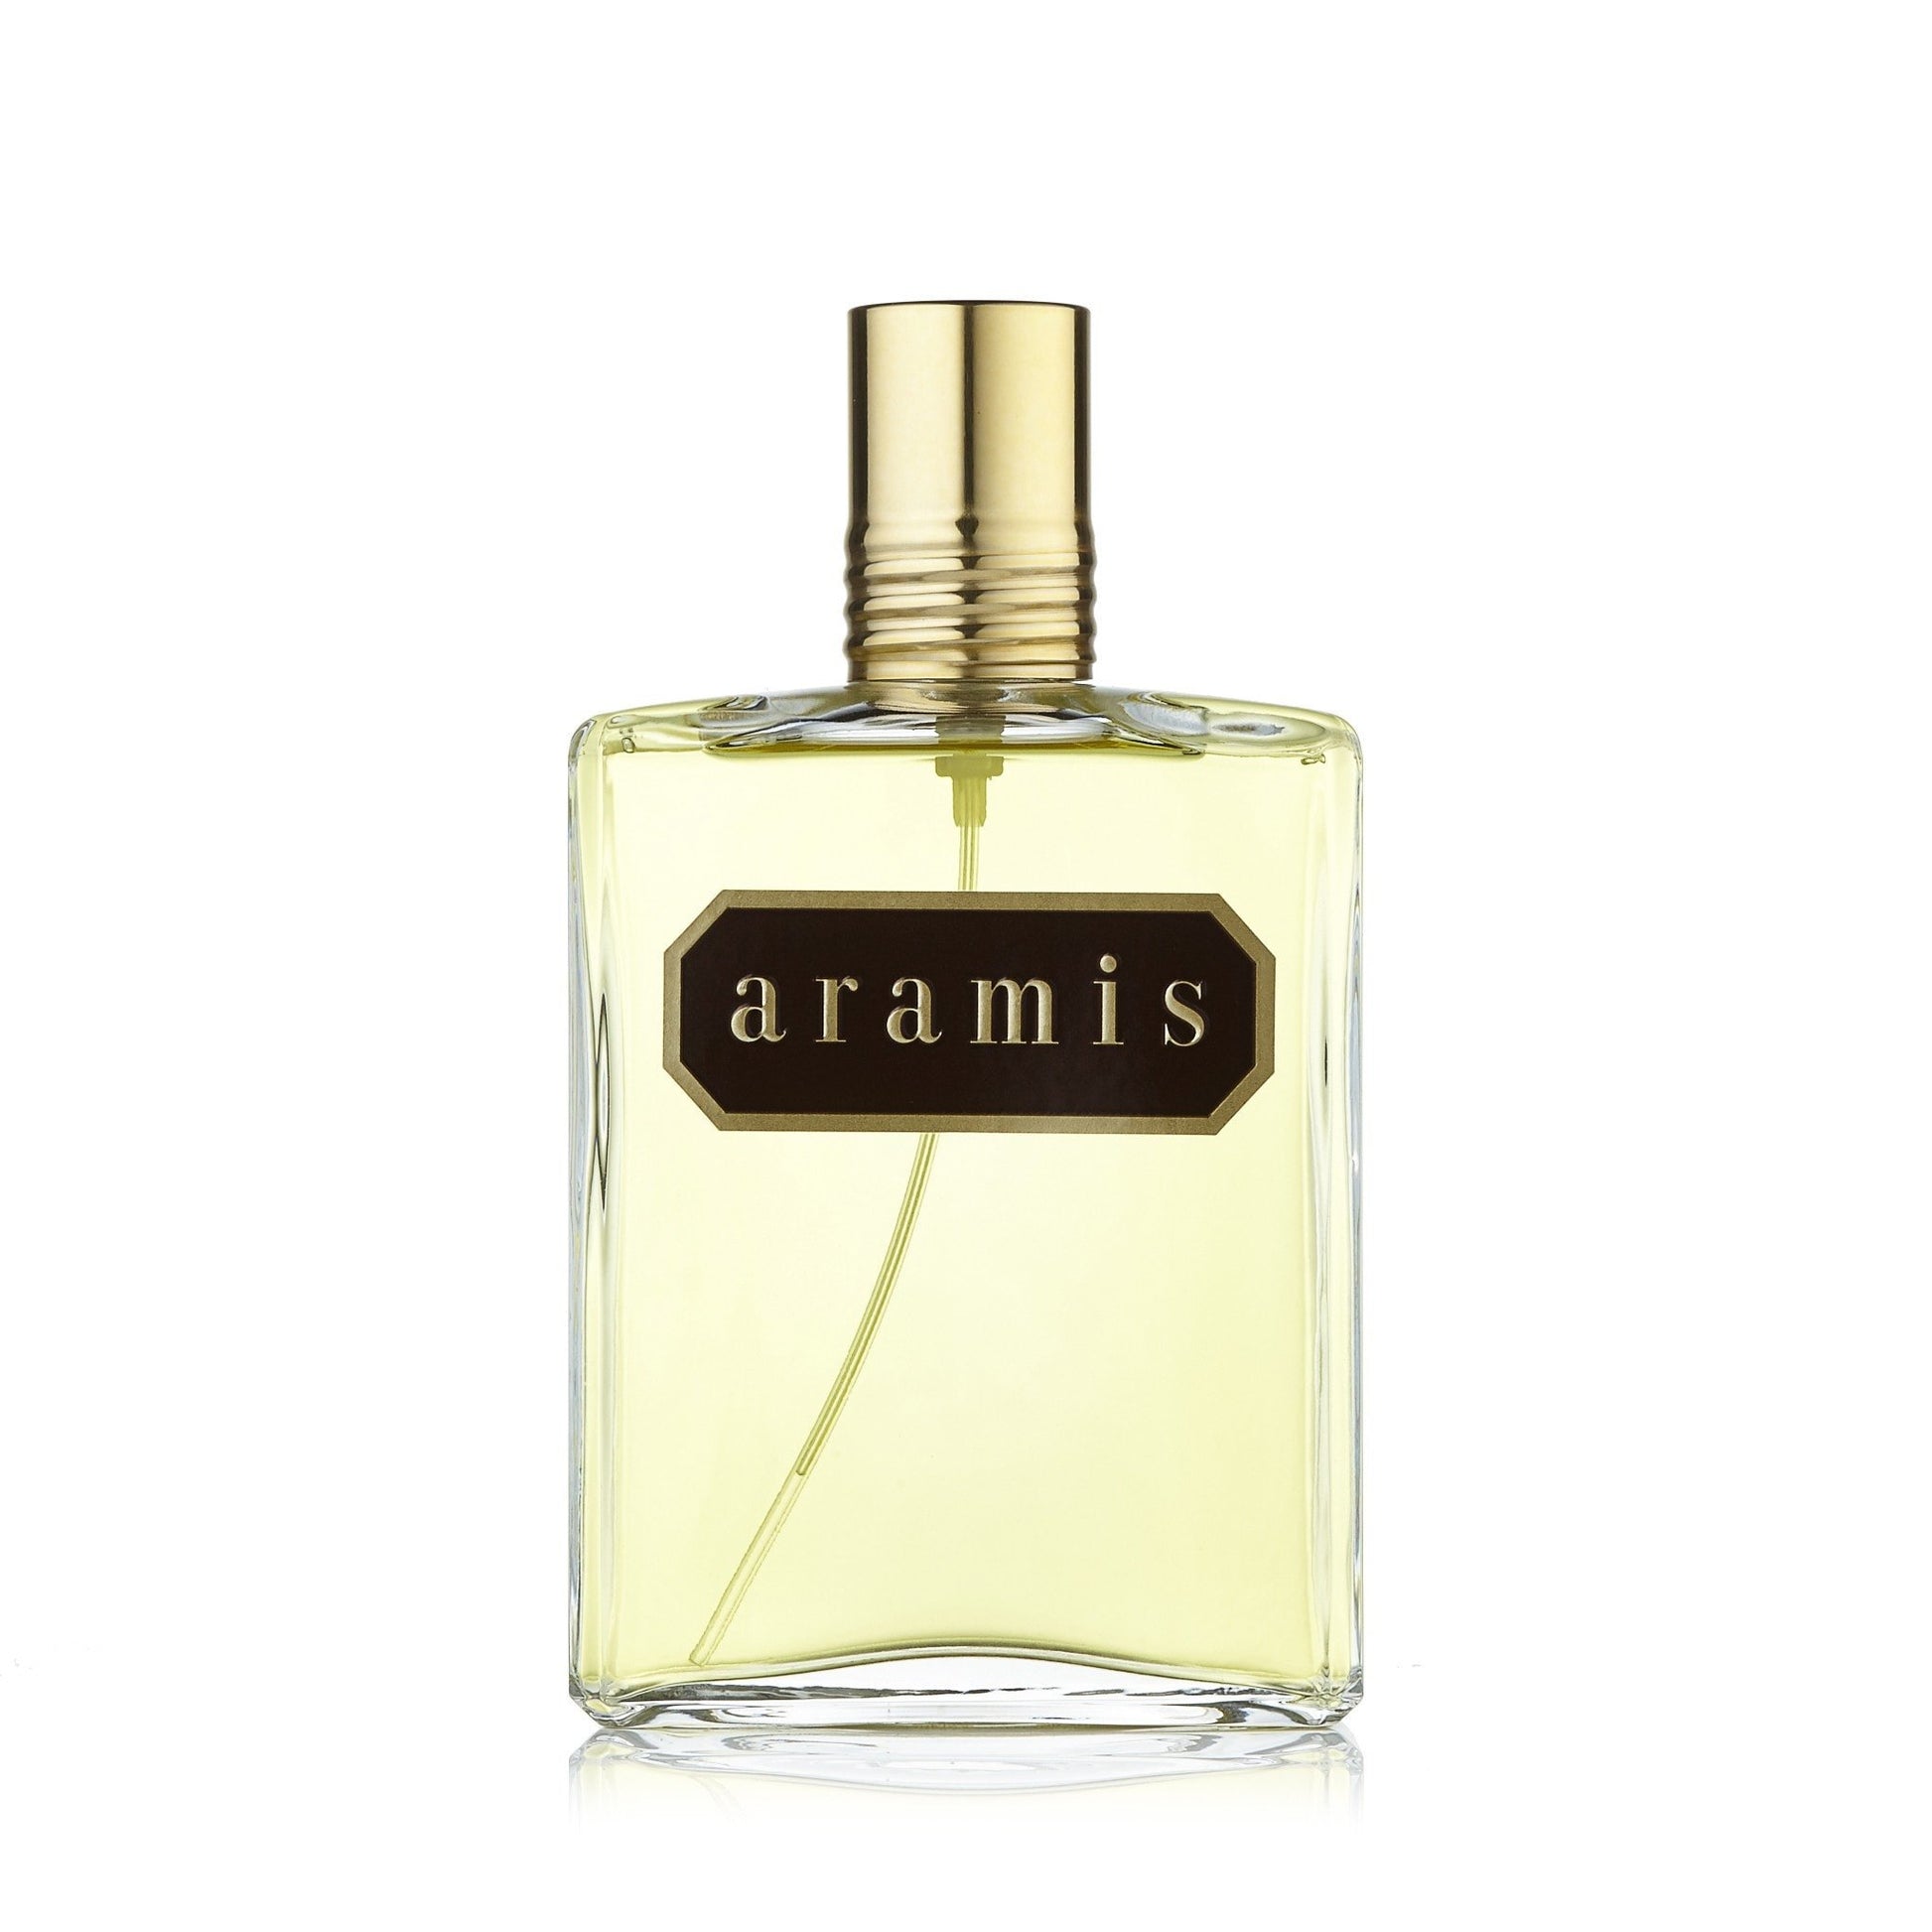 Aramis Eau de Toilette Spray for Men by Aramis, Product image 2